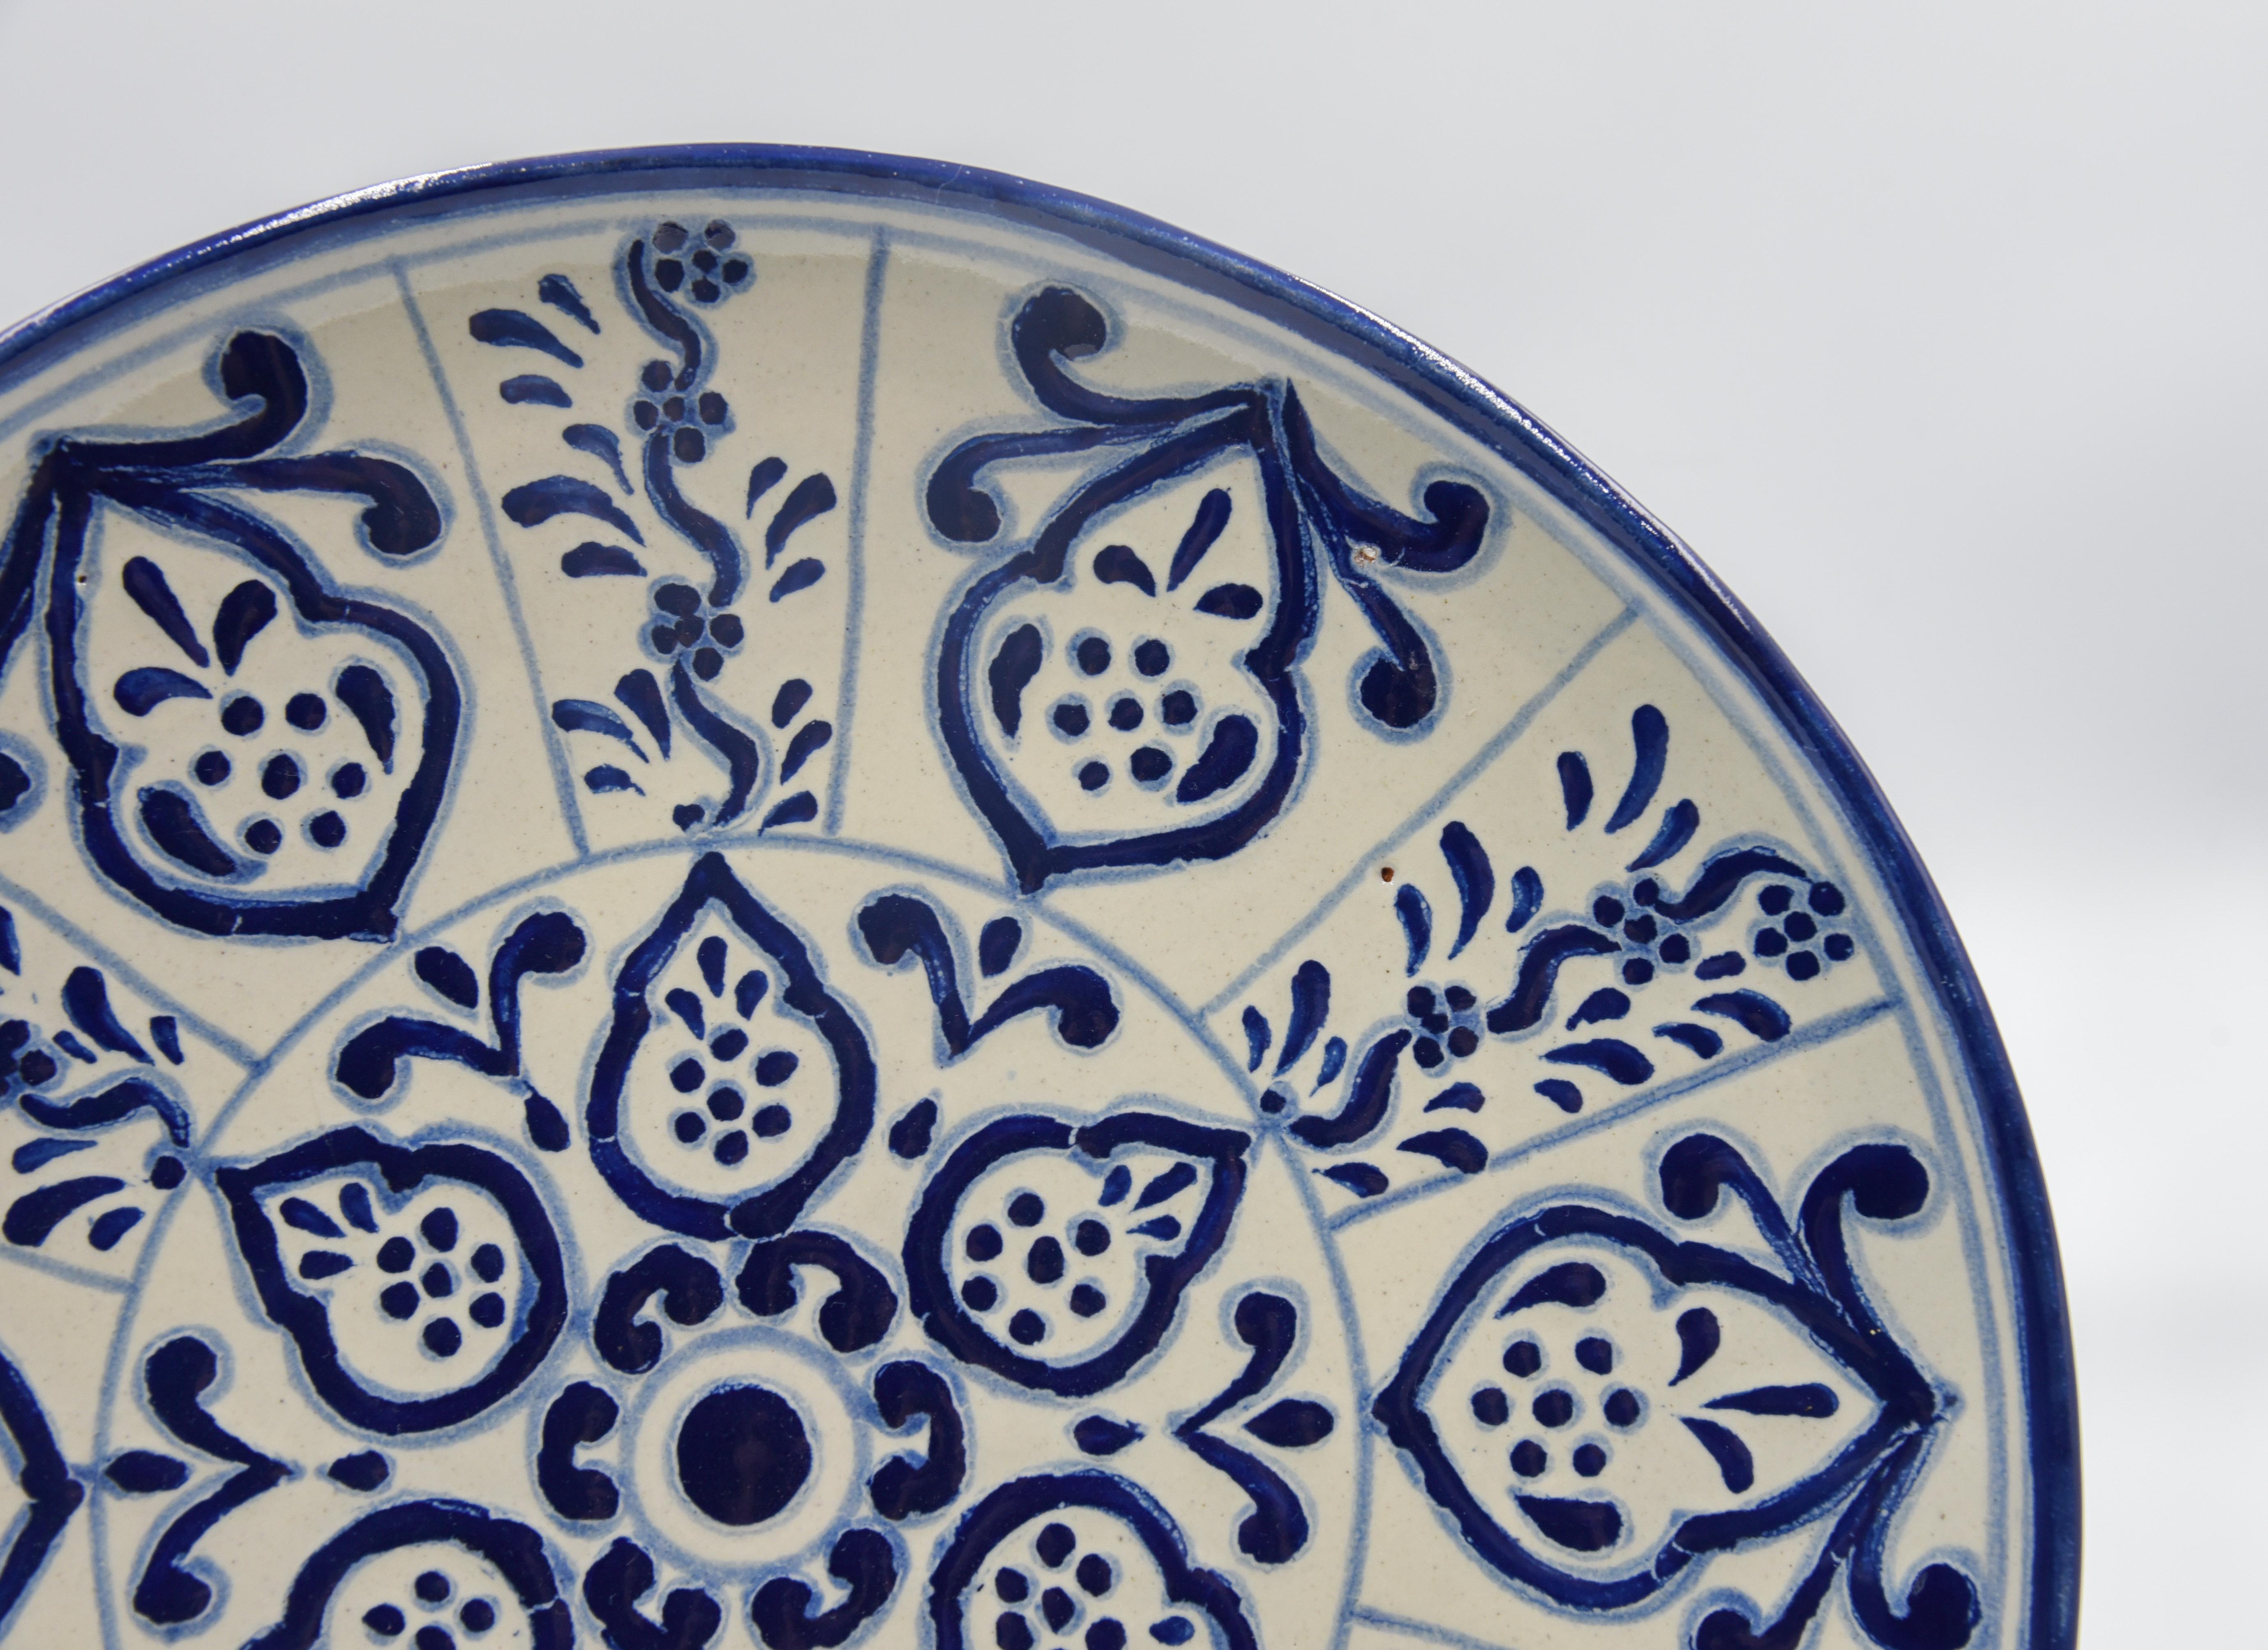 Authentische Talavera dekorative Platte Volkskunst Gericht mexikanischen Keramik blau weiß (Mexikanisch)